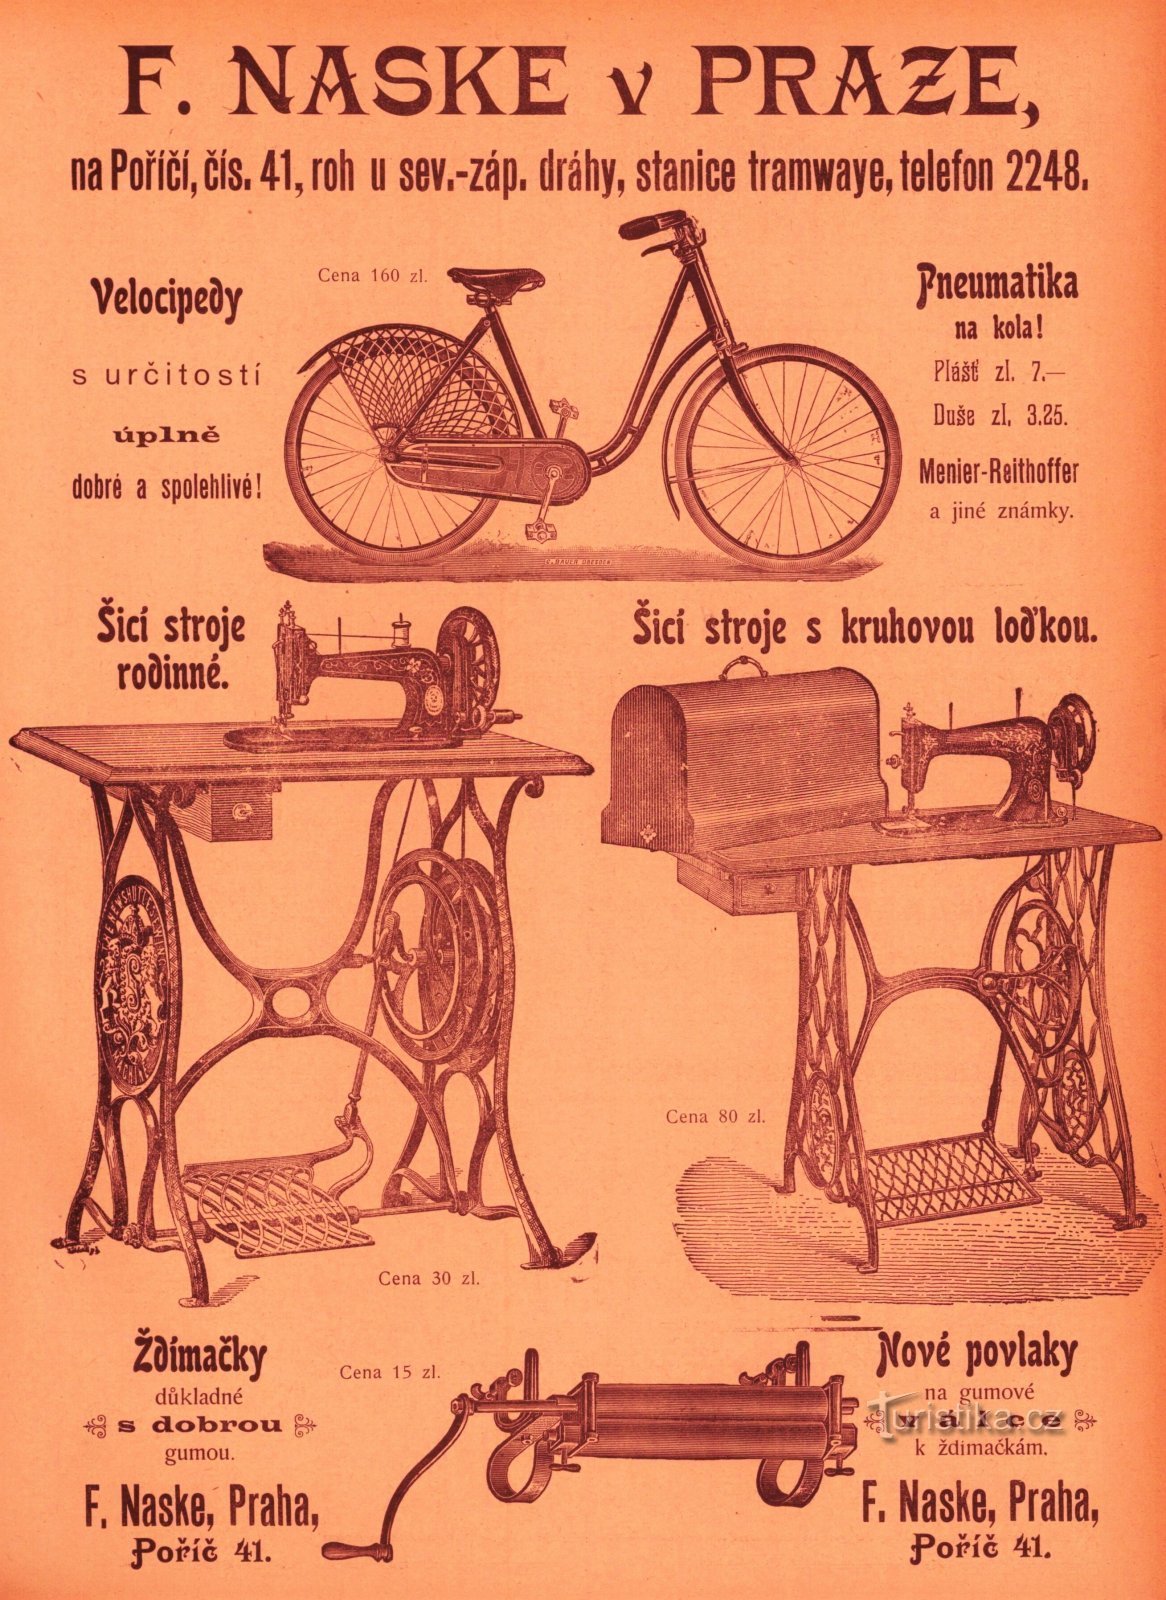 Anúncio da loja de František Naske de 1899